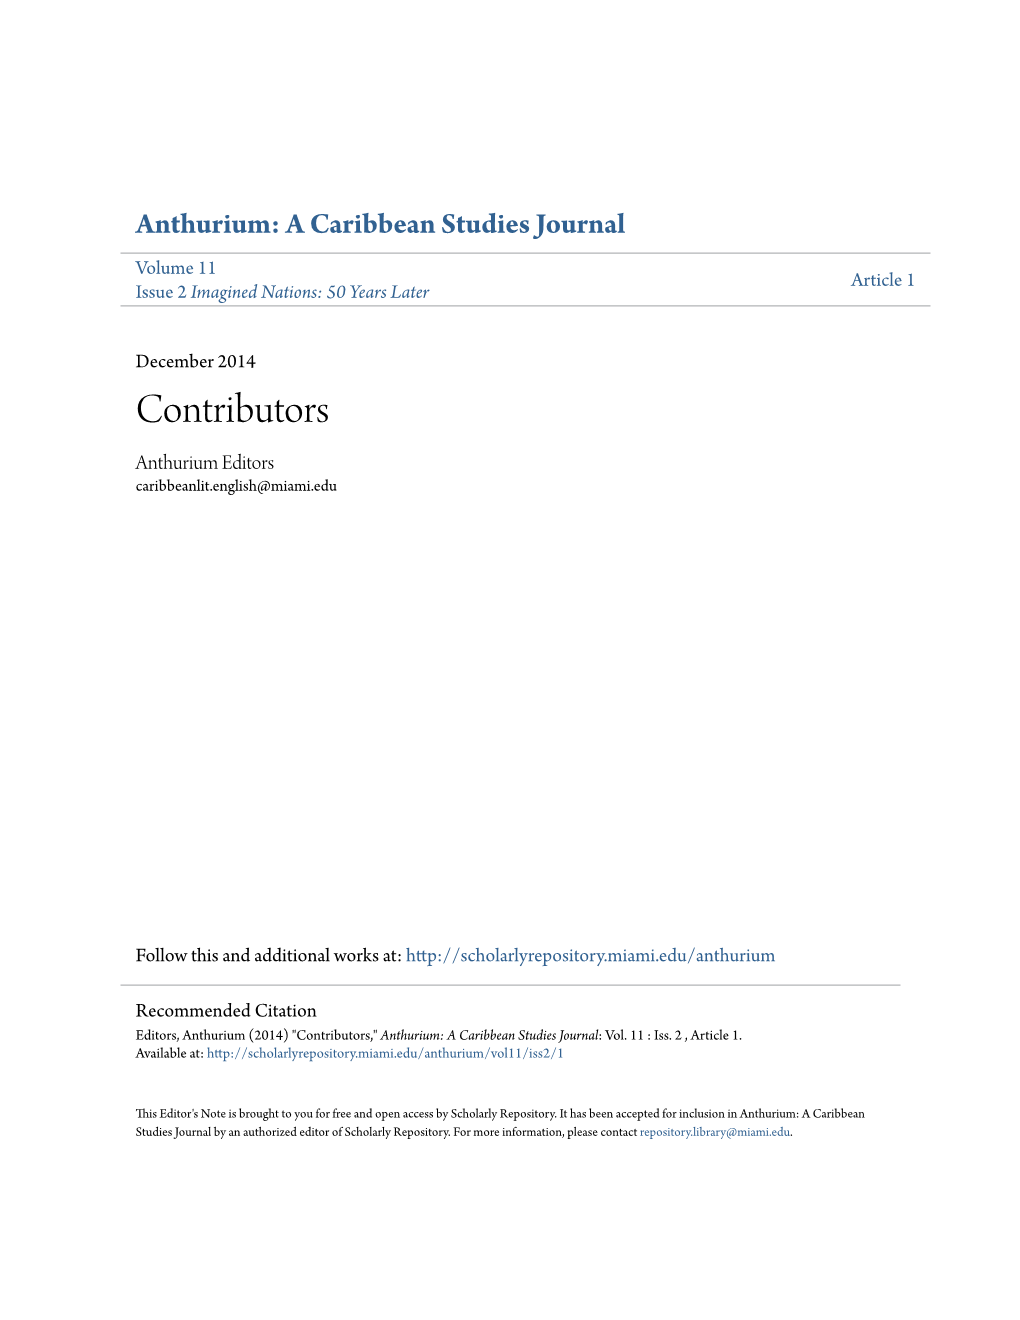 Contributors Anthurium Editors Caribbeanlit.English@Miami.Edu